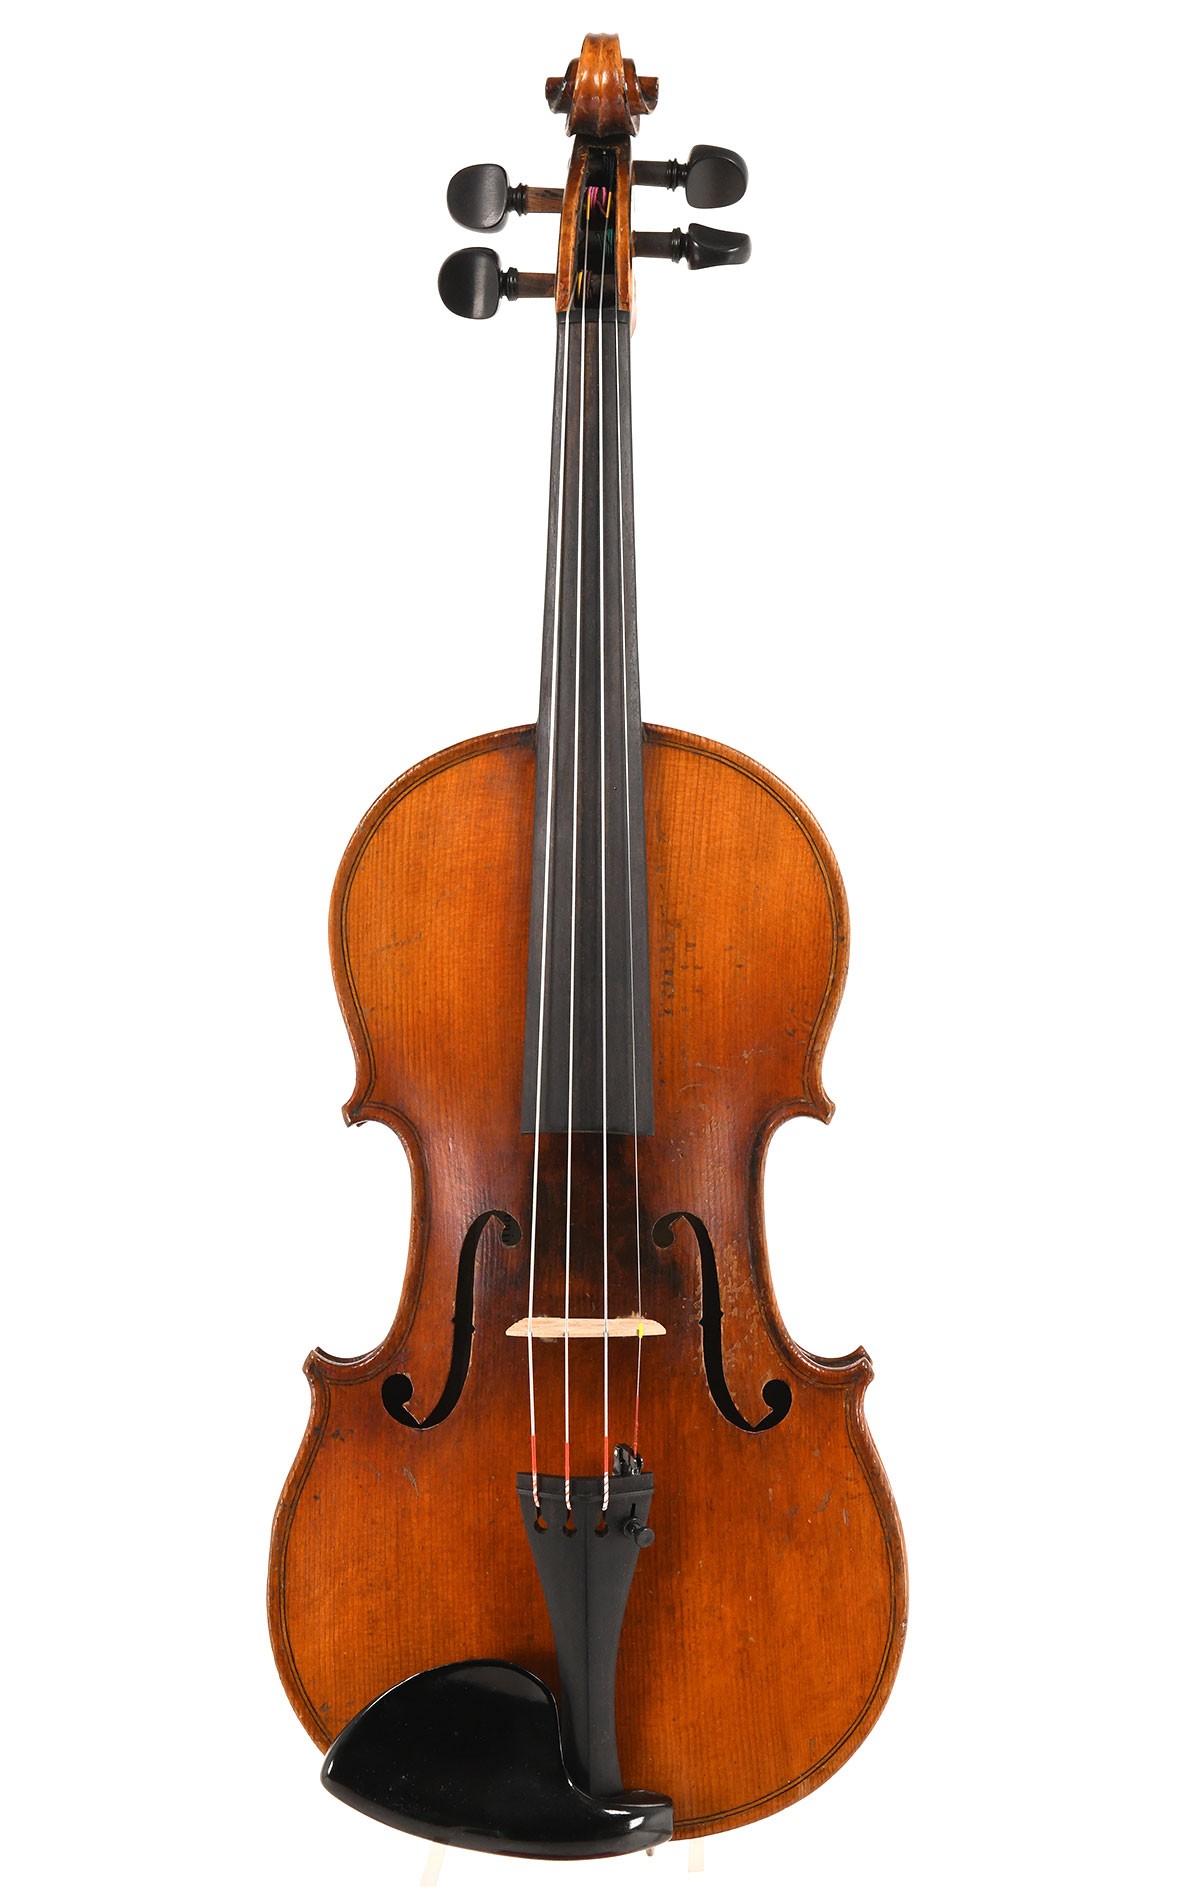 Antique 3/4 violin no. 445 by JTL made around 1880